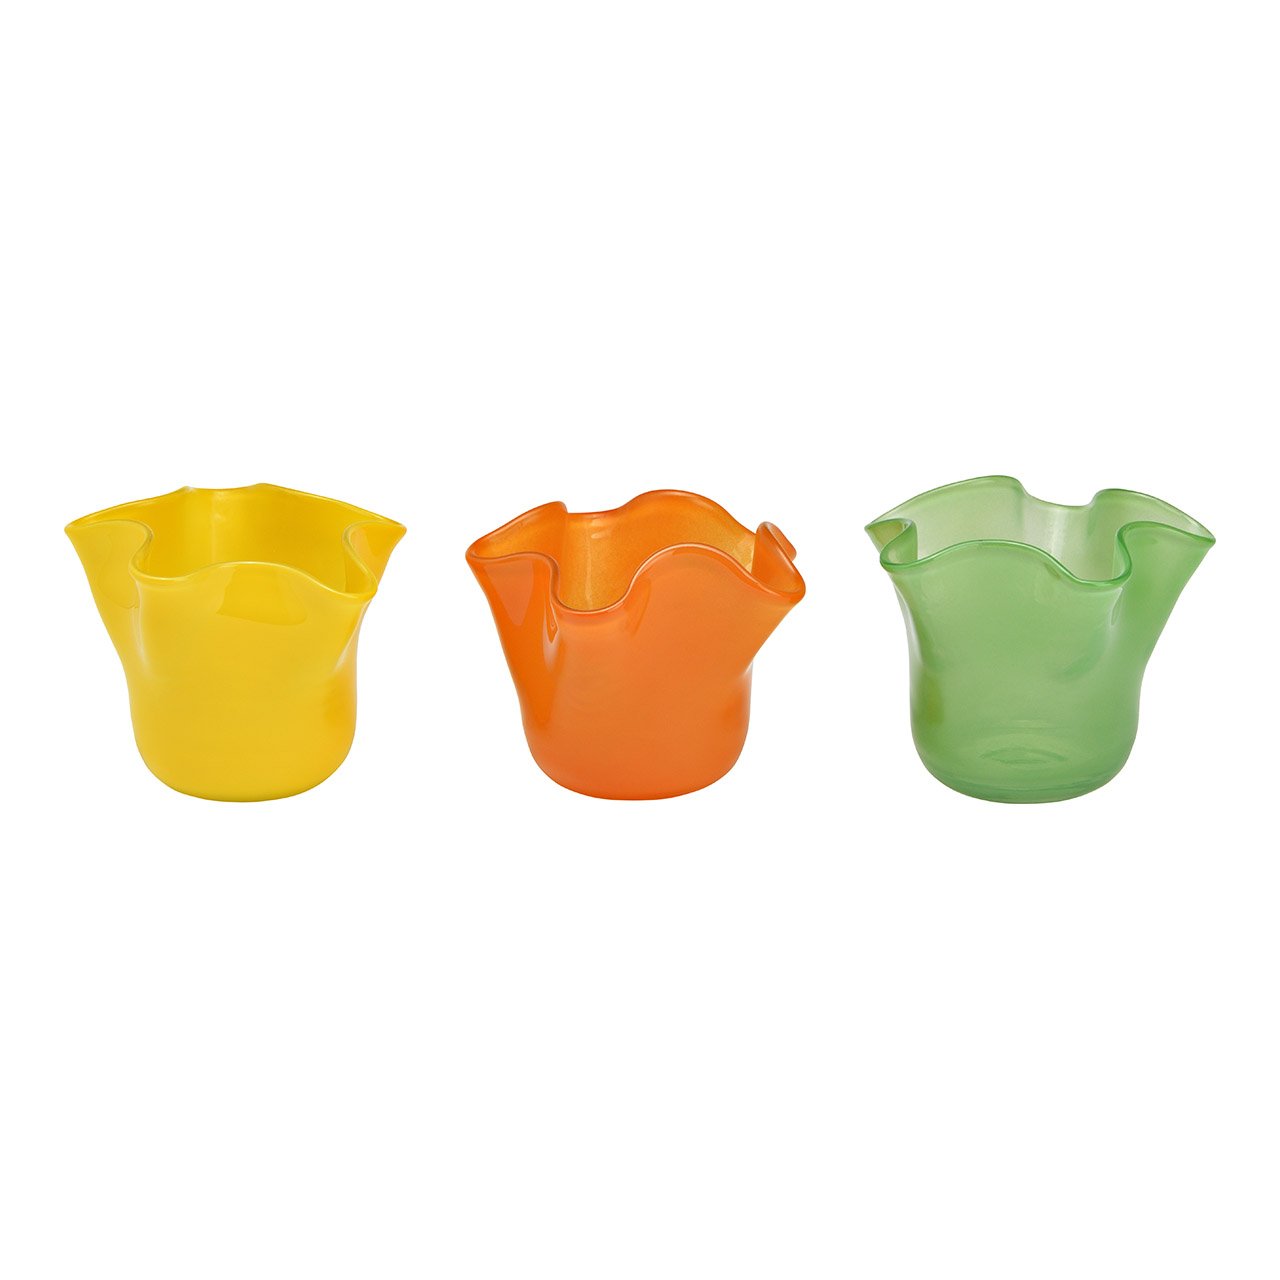 Glazen lantaarn oranje, groen, geel 3-voudig, (B/H/D) 12x10x12cm